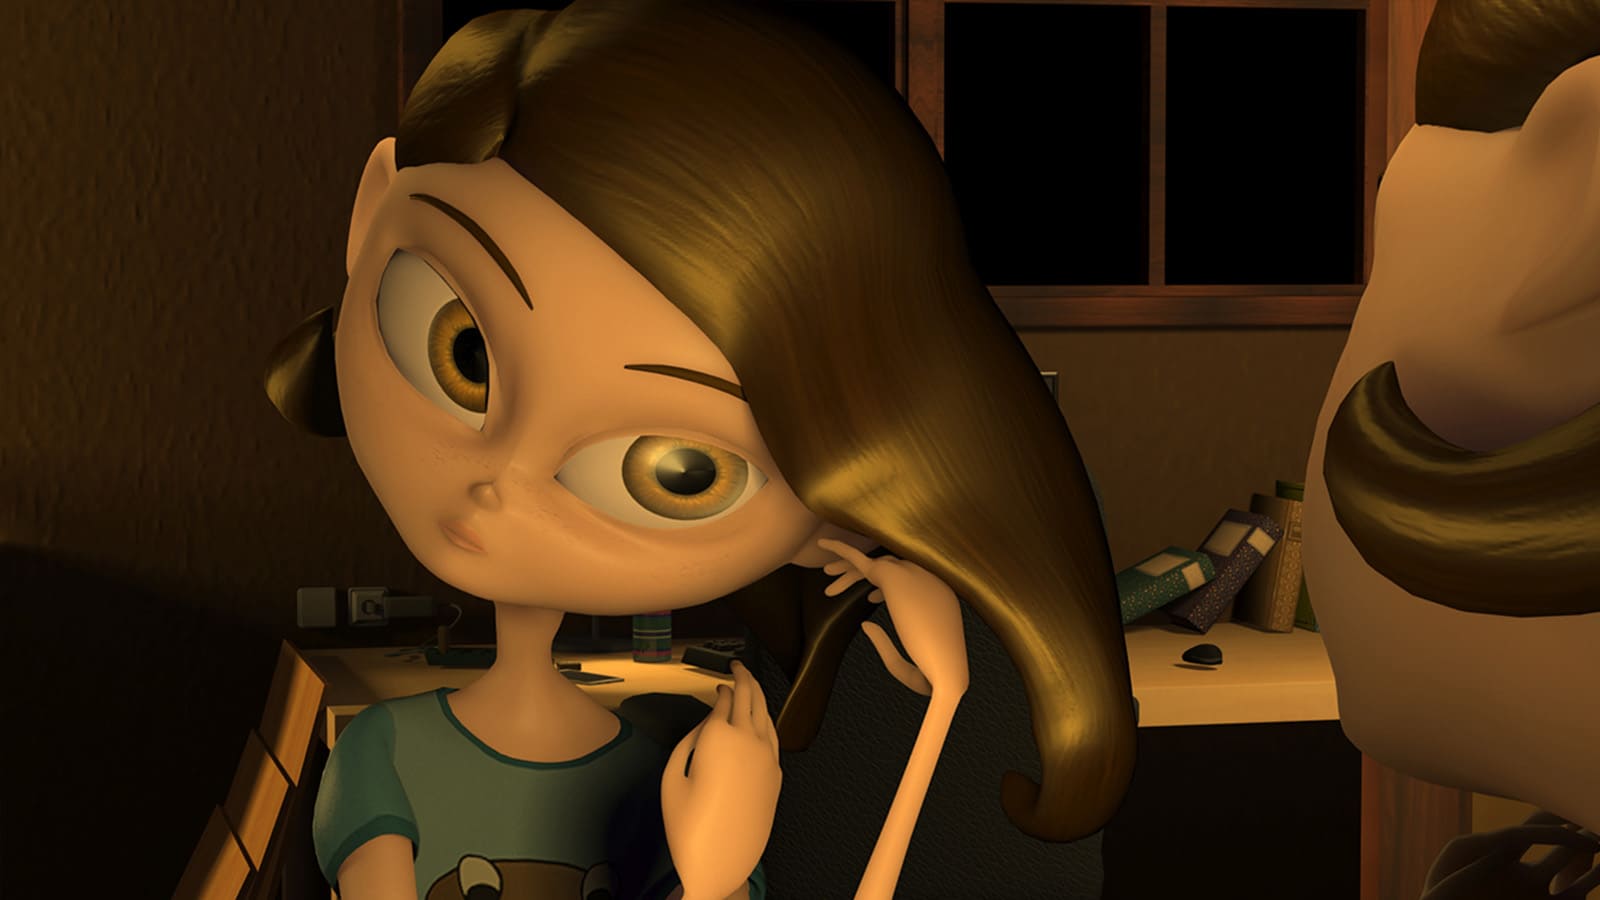 Skye, la protagonista, está sentada frente al espejo en su habitación, arreglándose el cabello.